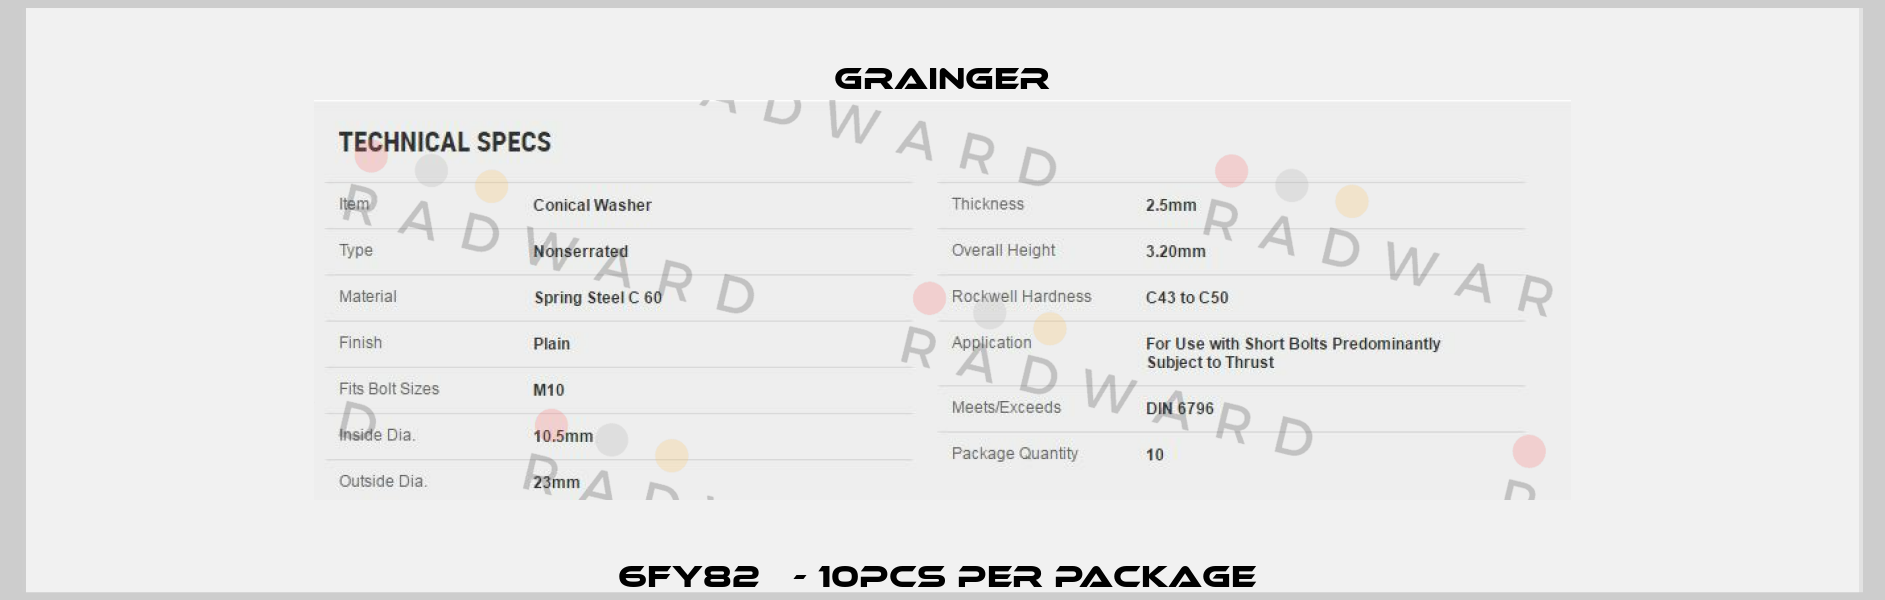 6FY82   - 10pcs per package  Grainger